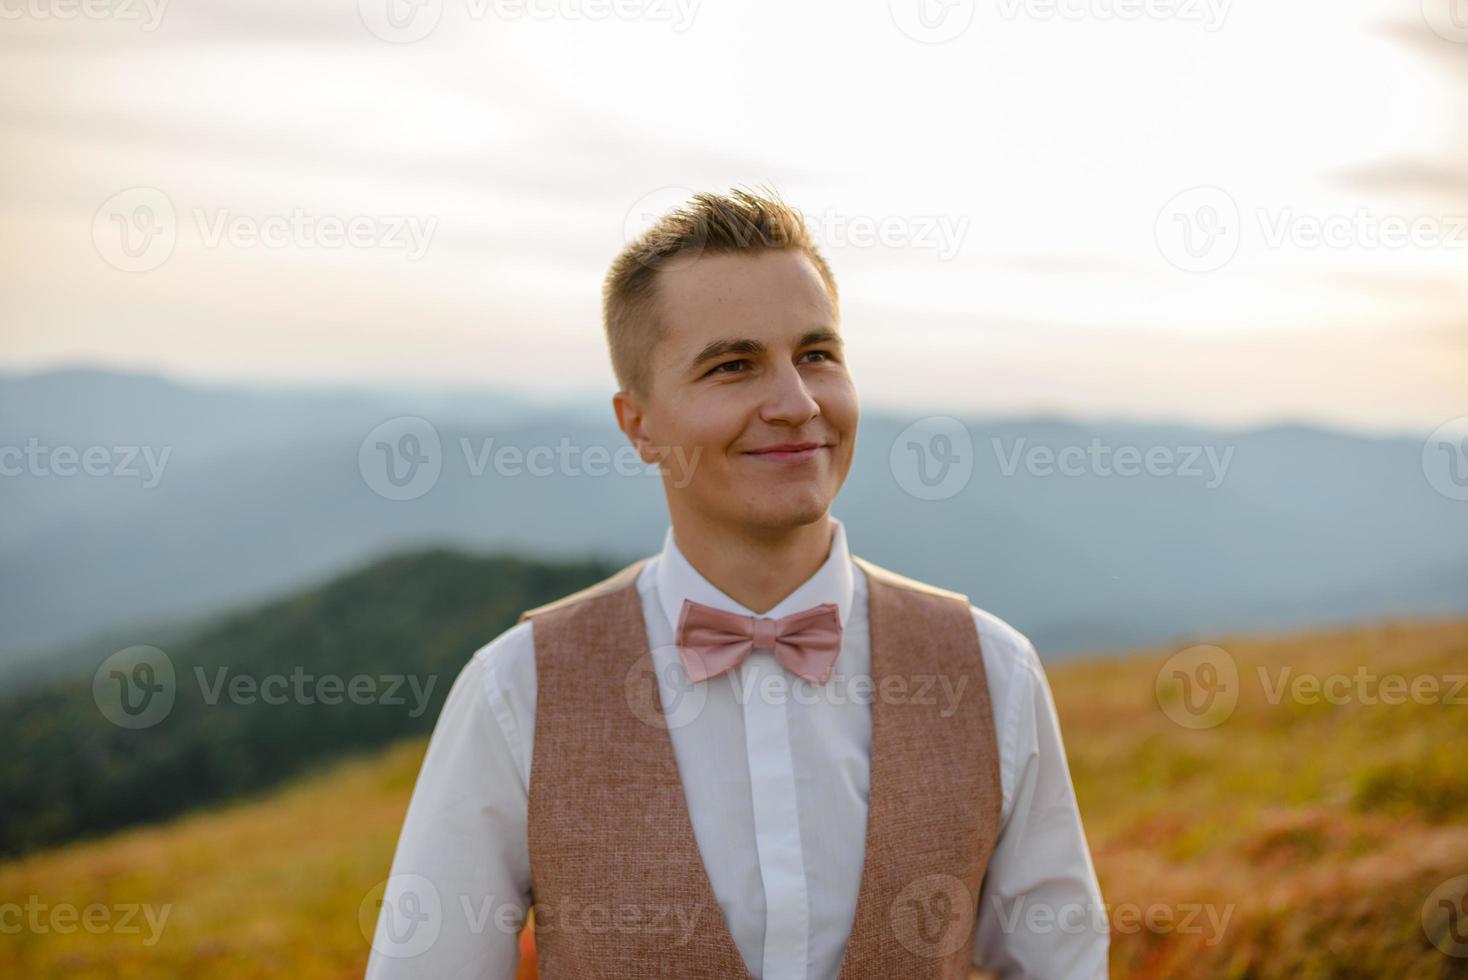 espalda de un joven disfrazado parado en una montaña al atardecer. el novio o el hombre de negocios mira desde arriba. foto